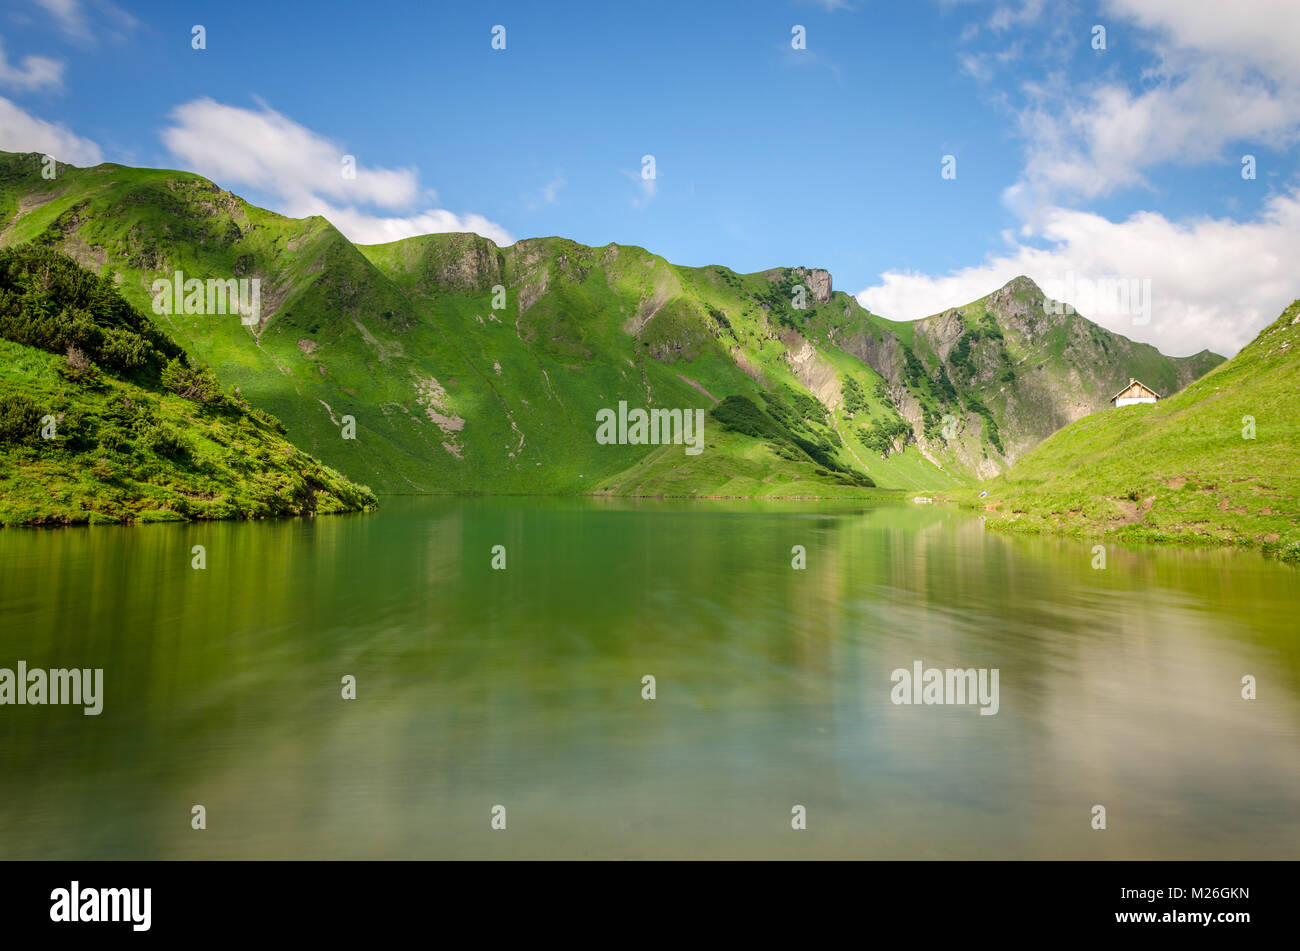 lake on mountain Stock Photo